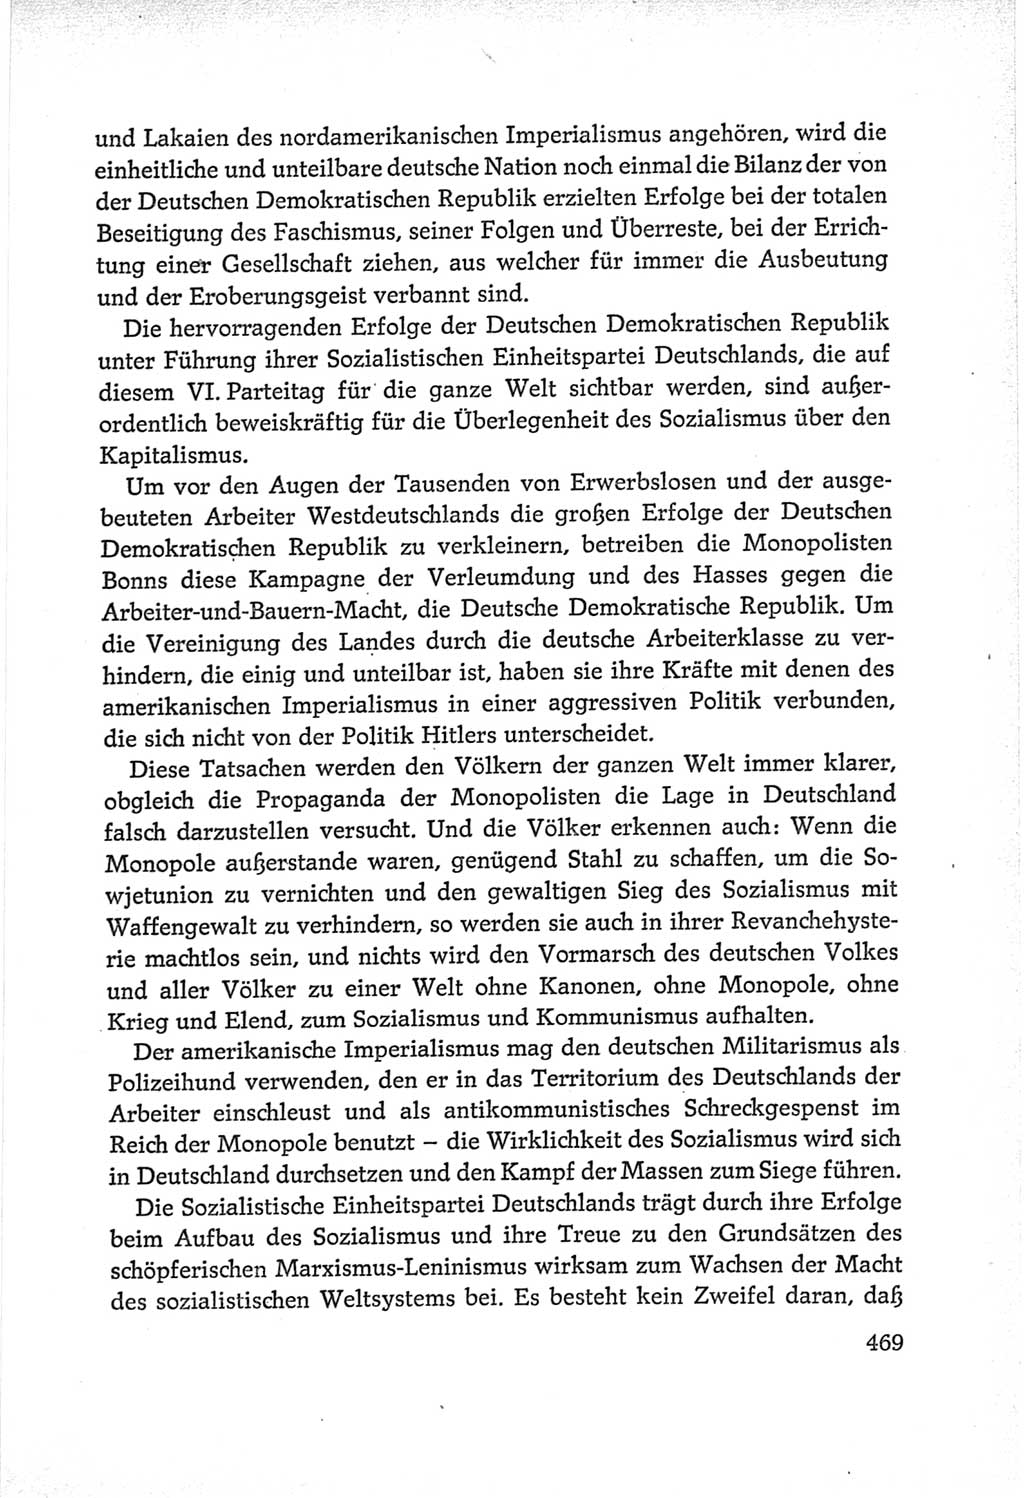 Protokoll der Verhandlungen des Ⅵ. Parteitages der Sozialistischen Einheitspartei Deutschlands (SED) [Deutsche Demokratische Republik (DDR)] 1963, Band Ⅱ, Seite 469 (Prot. Verh. Ⅵ. PT SED DDR 1963, Bd. Ⅱ, S. 469)